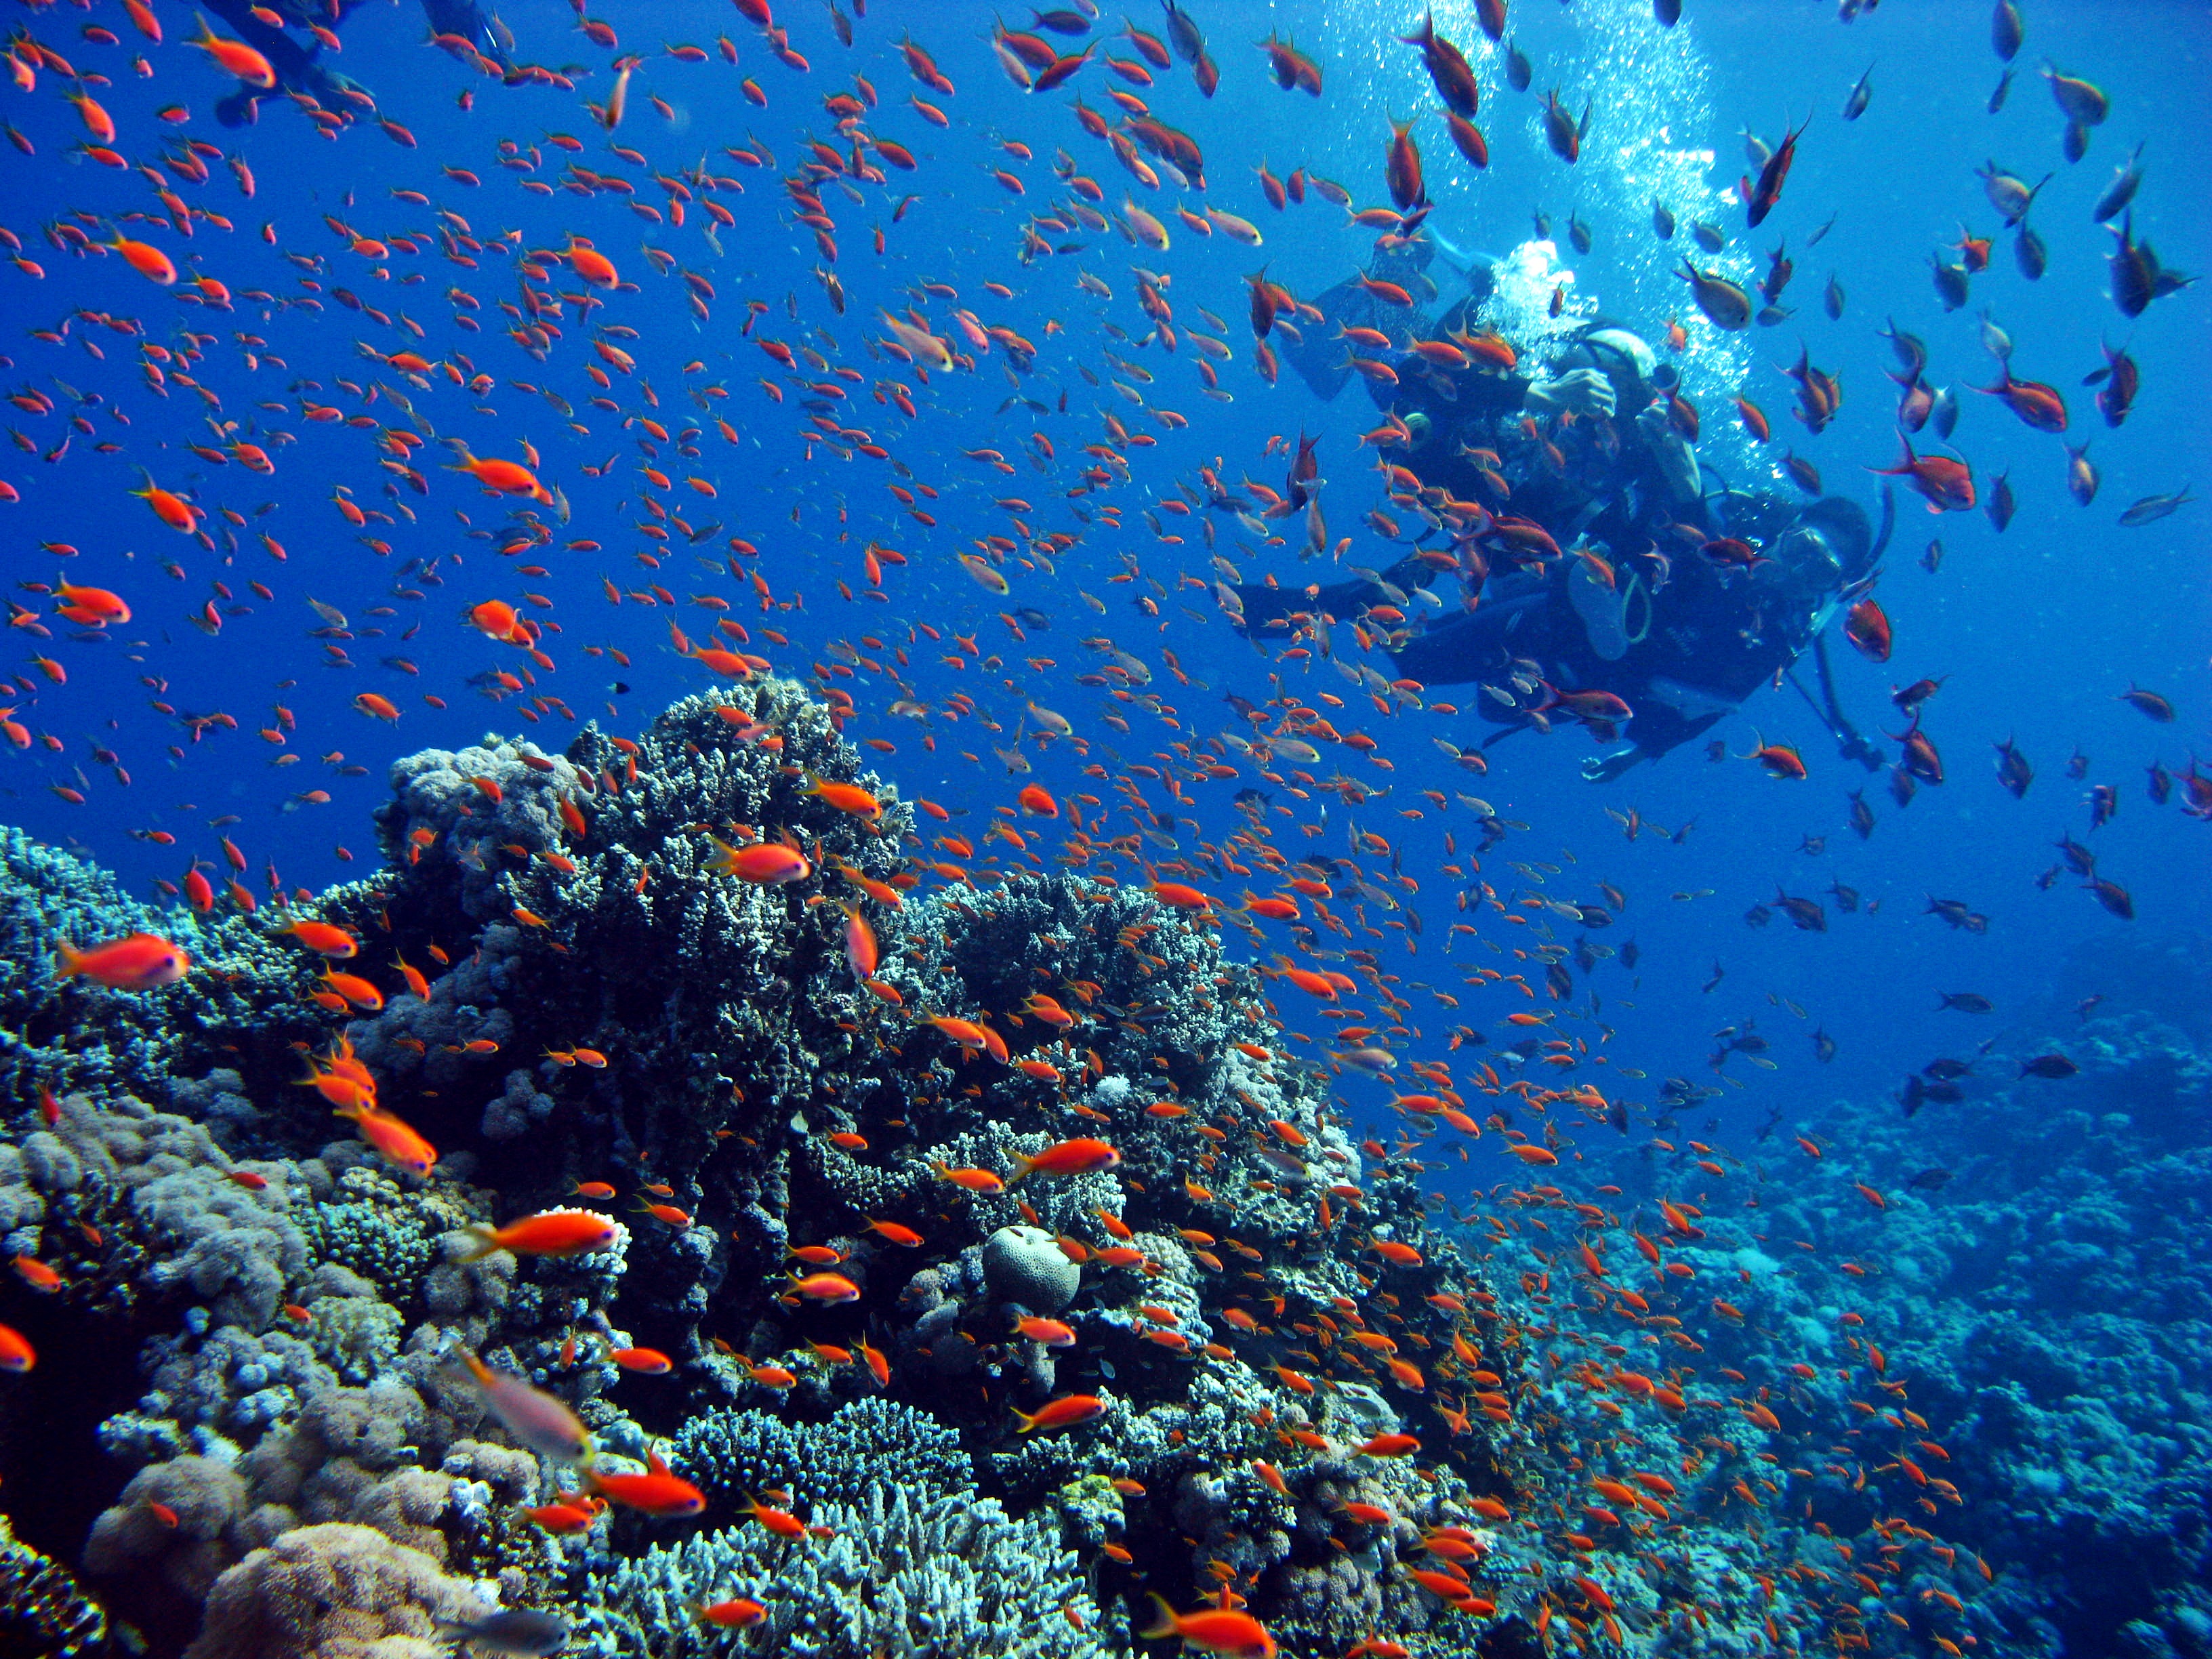 형형색색 산호와 가지각색 물고기들이 다이버를 반긴다.